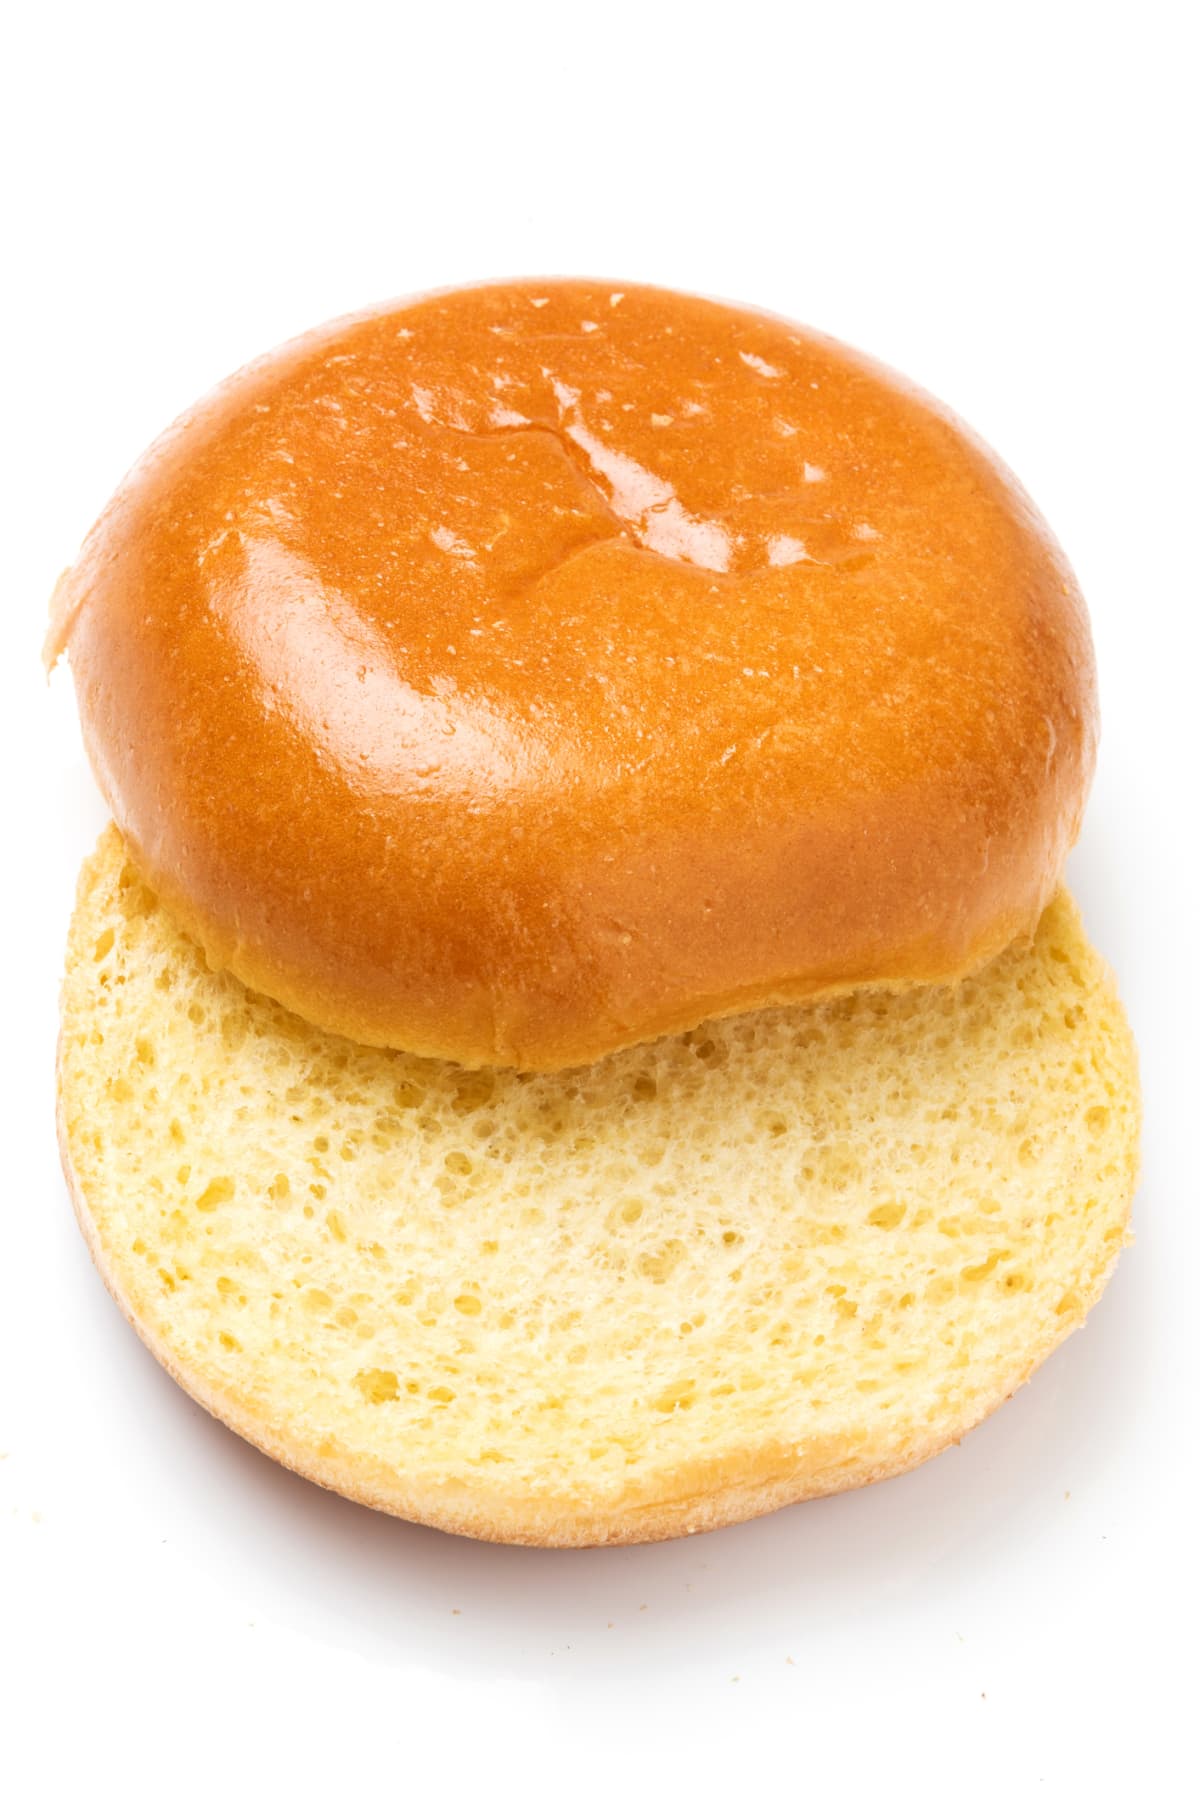 A sliced hamburger bun